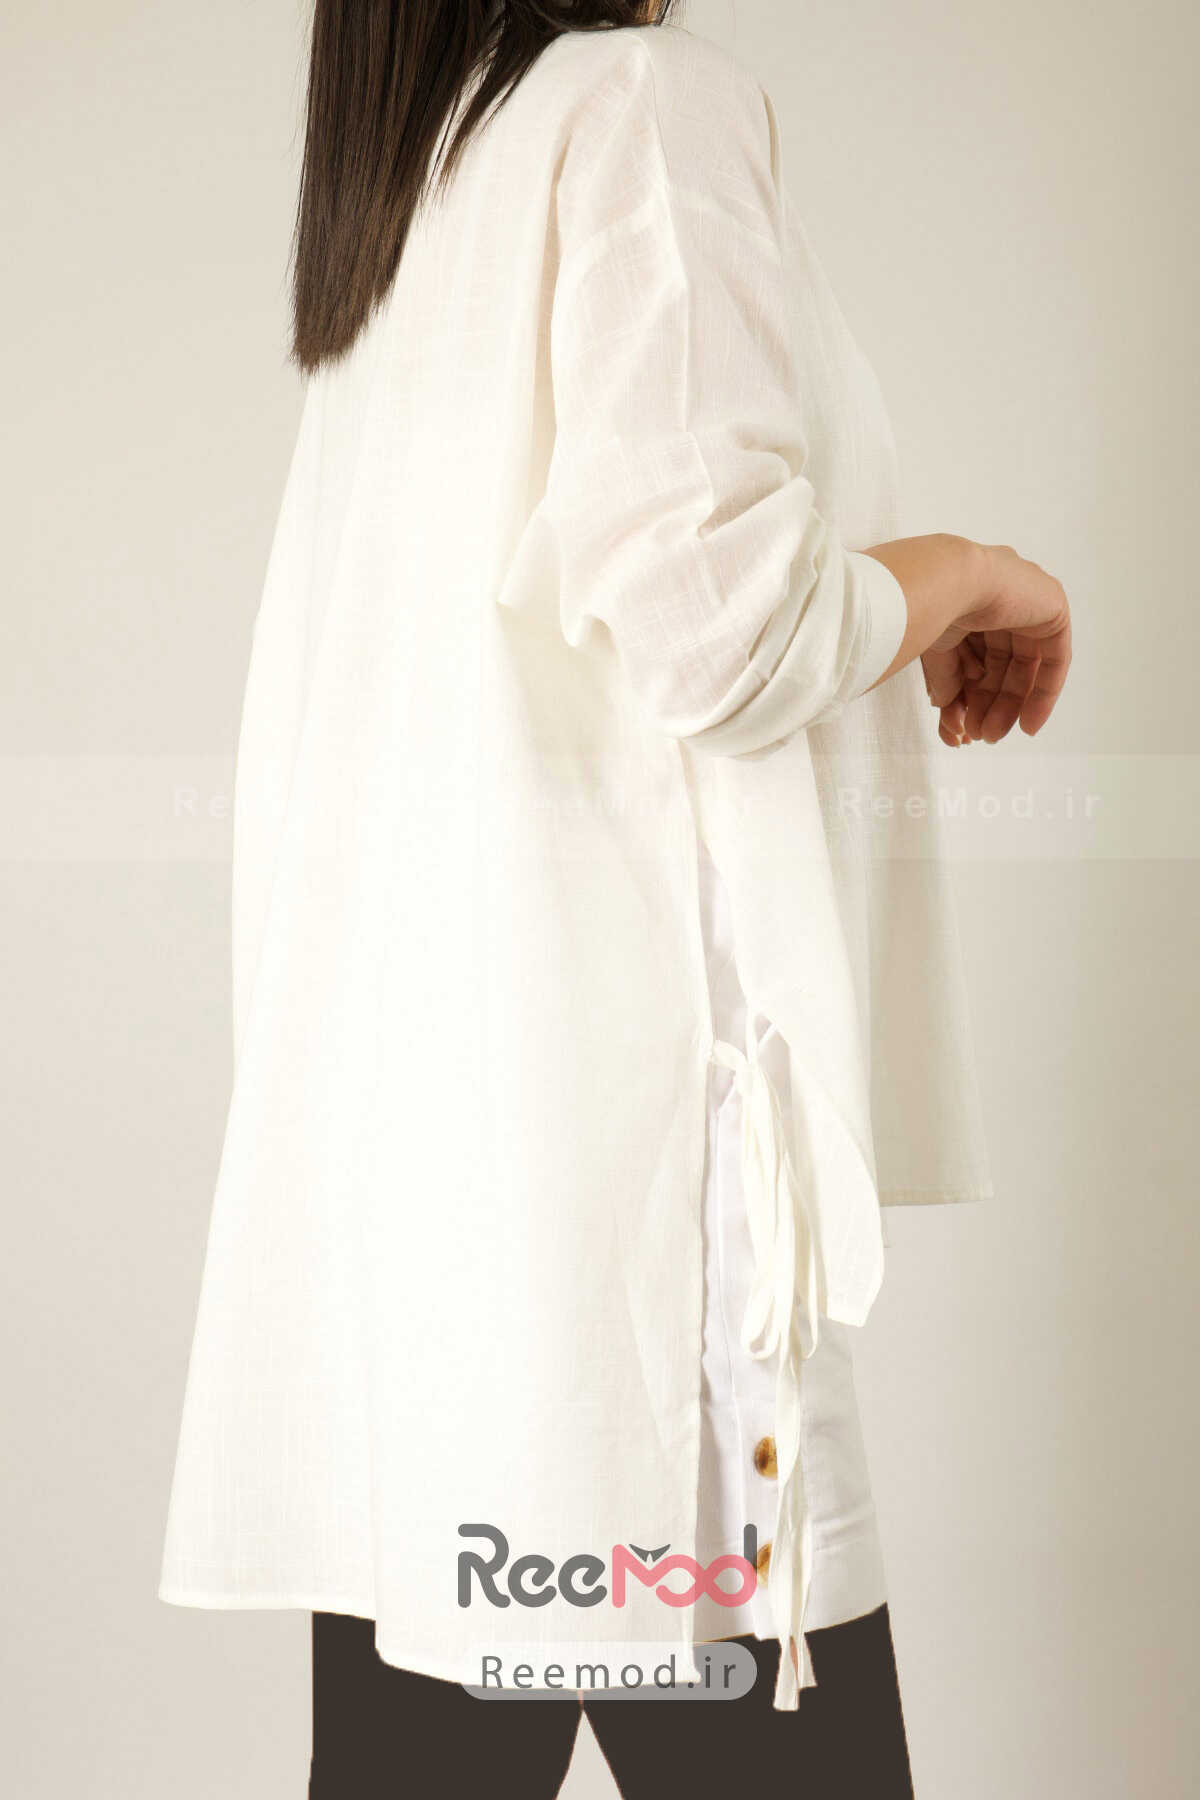 پیراهن زنانه گشاد بند دار نامتقارن چاک دار سفید اکرو برند ABBRA